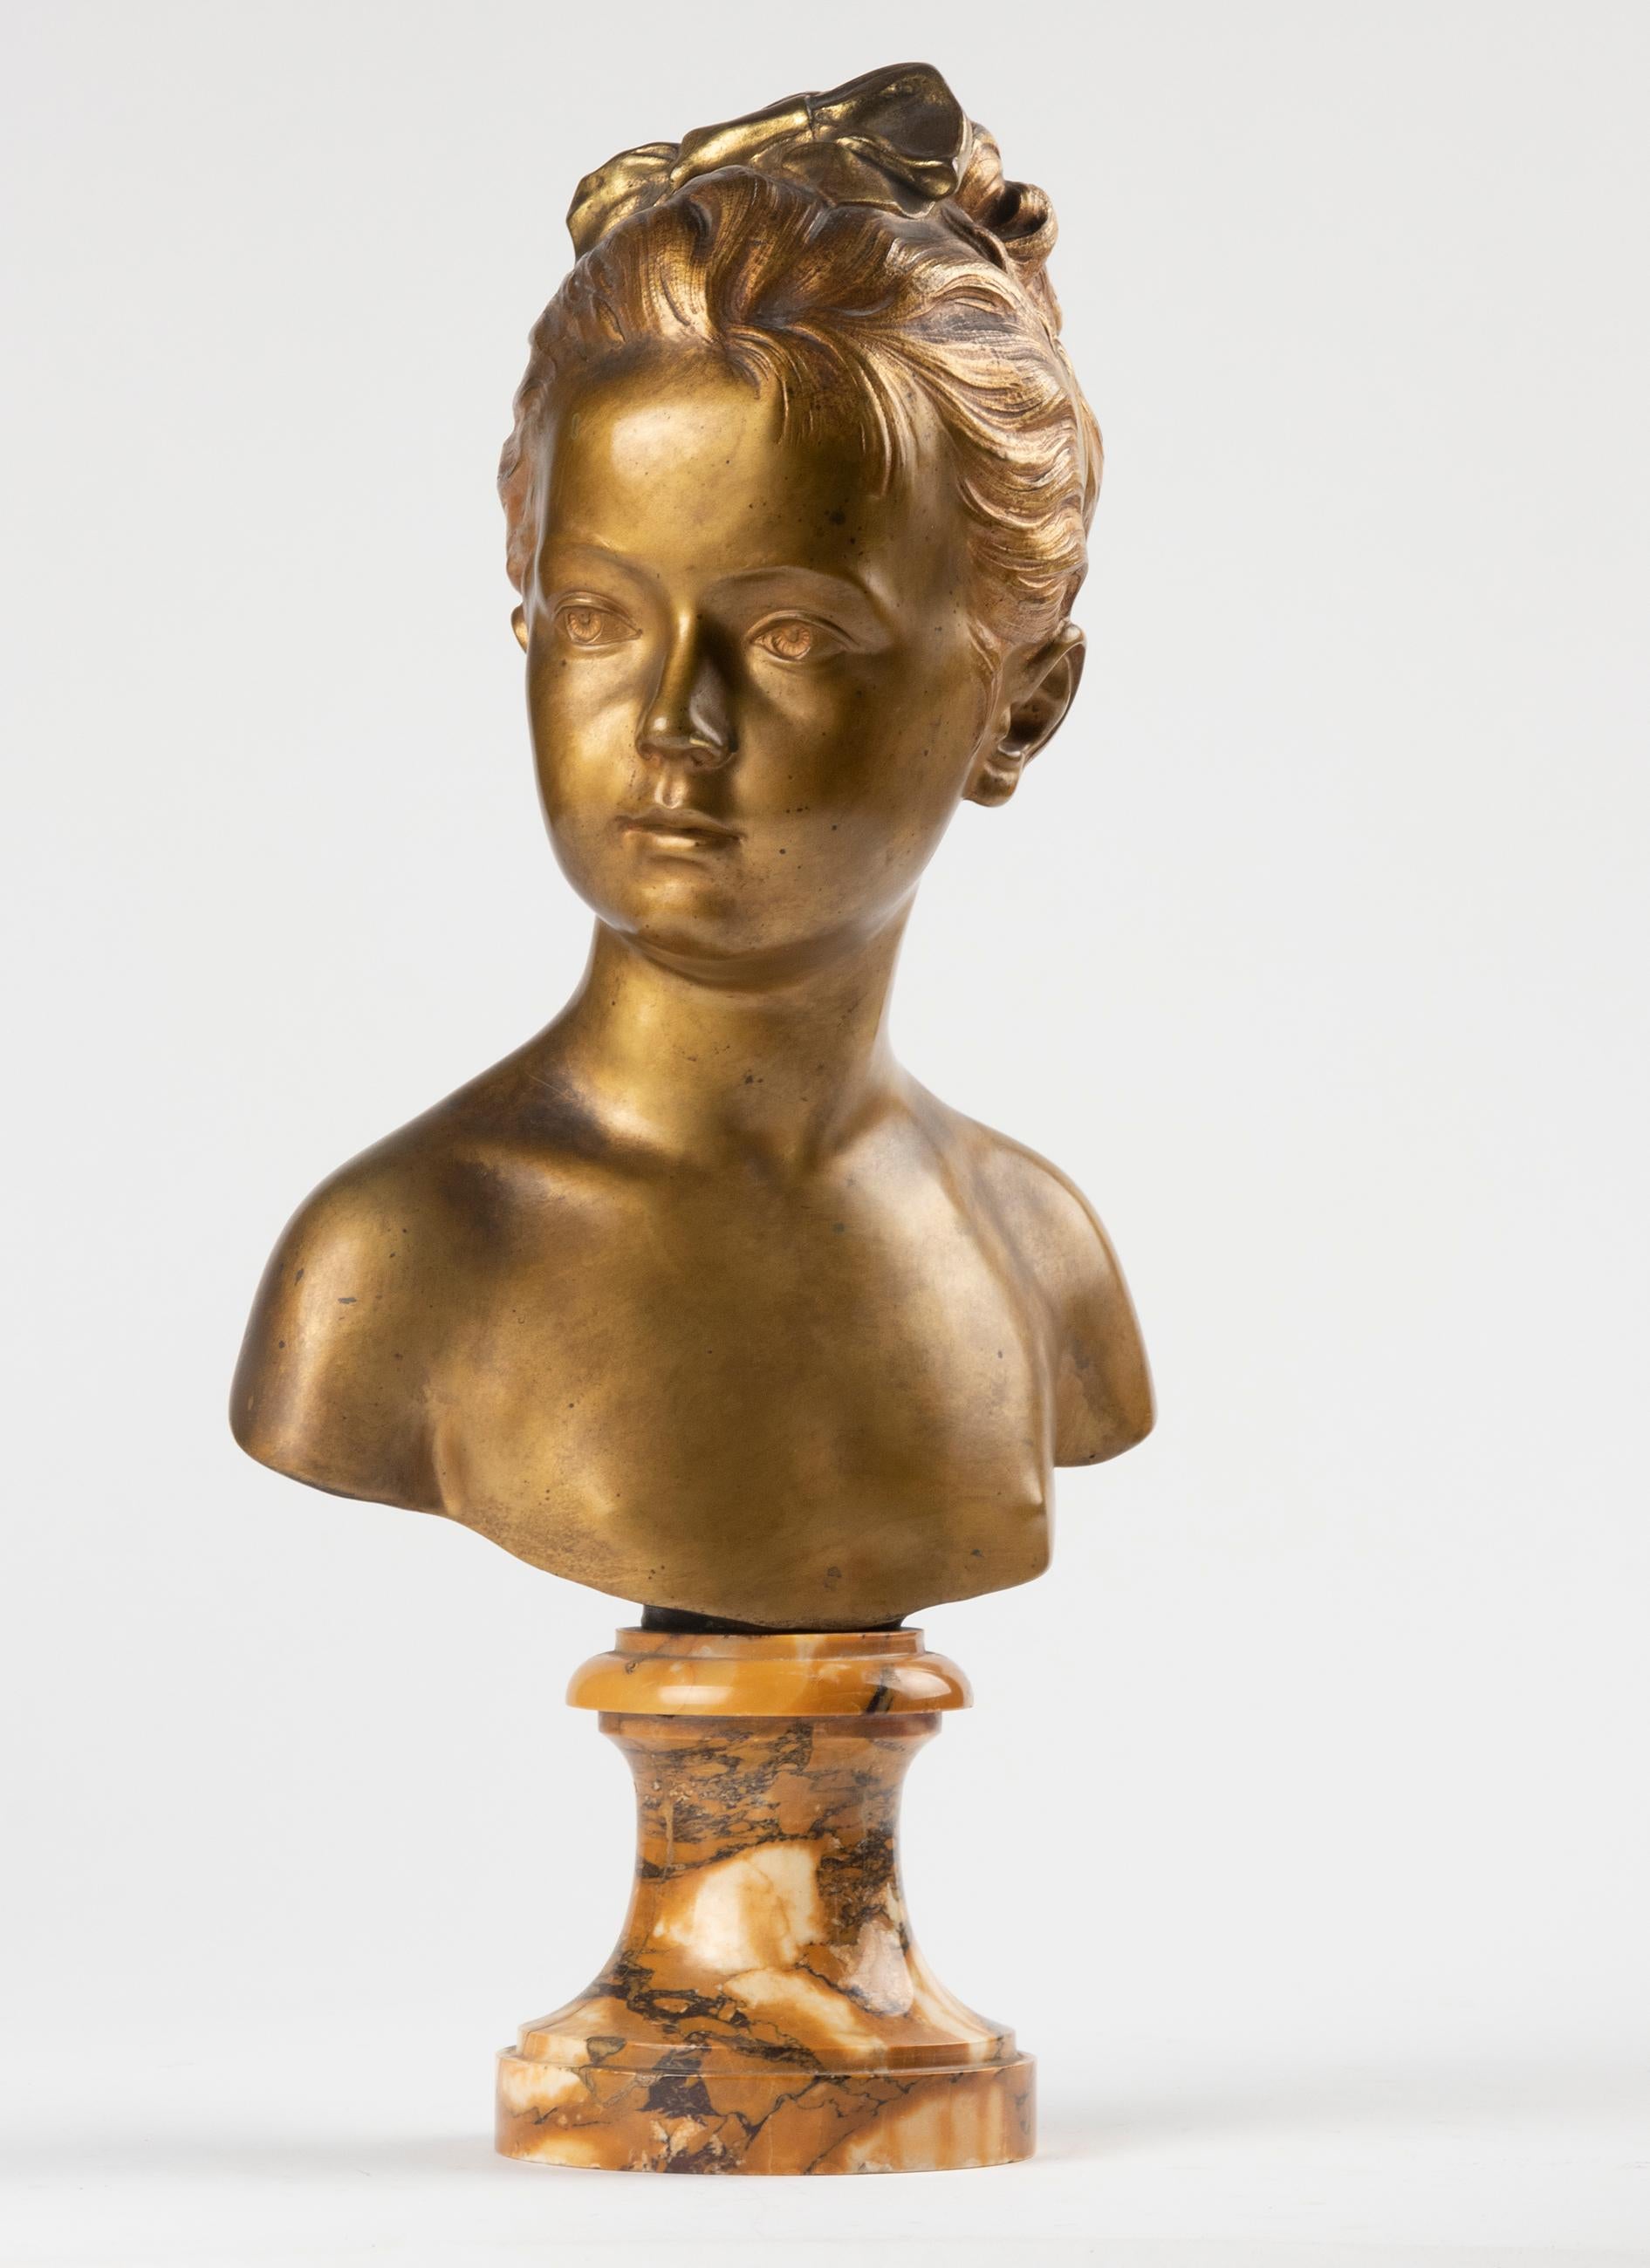 Un buste français en bronze à patine dorée originale est issu d'un chef-d'œuvre de Jean-Antoine Houdon. Le buste original de Louise Brongniart (1772-1845) a été réalisé en terre cuite en 1777 et exposé au Louvre à Paris. Les bustes de Louise et de